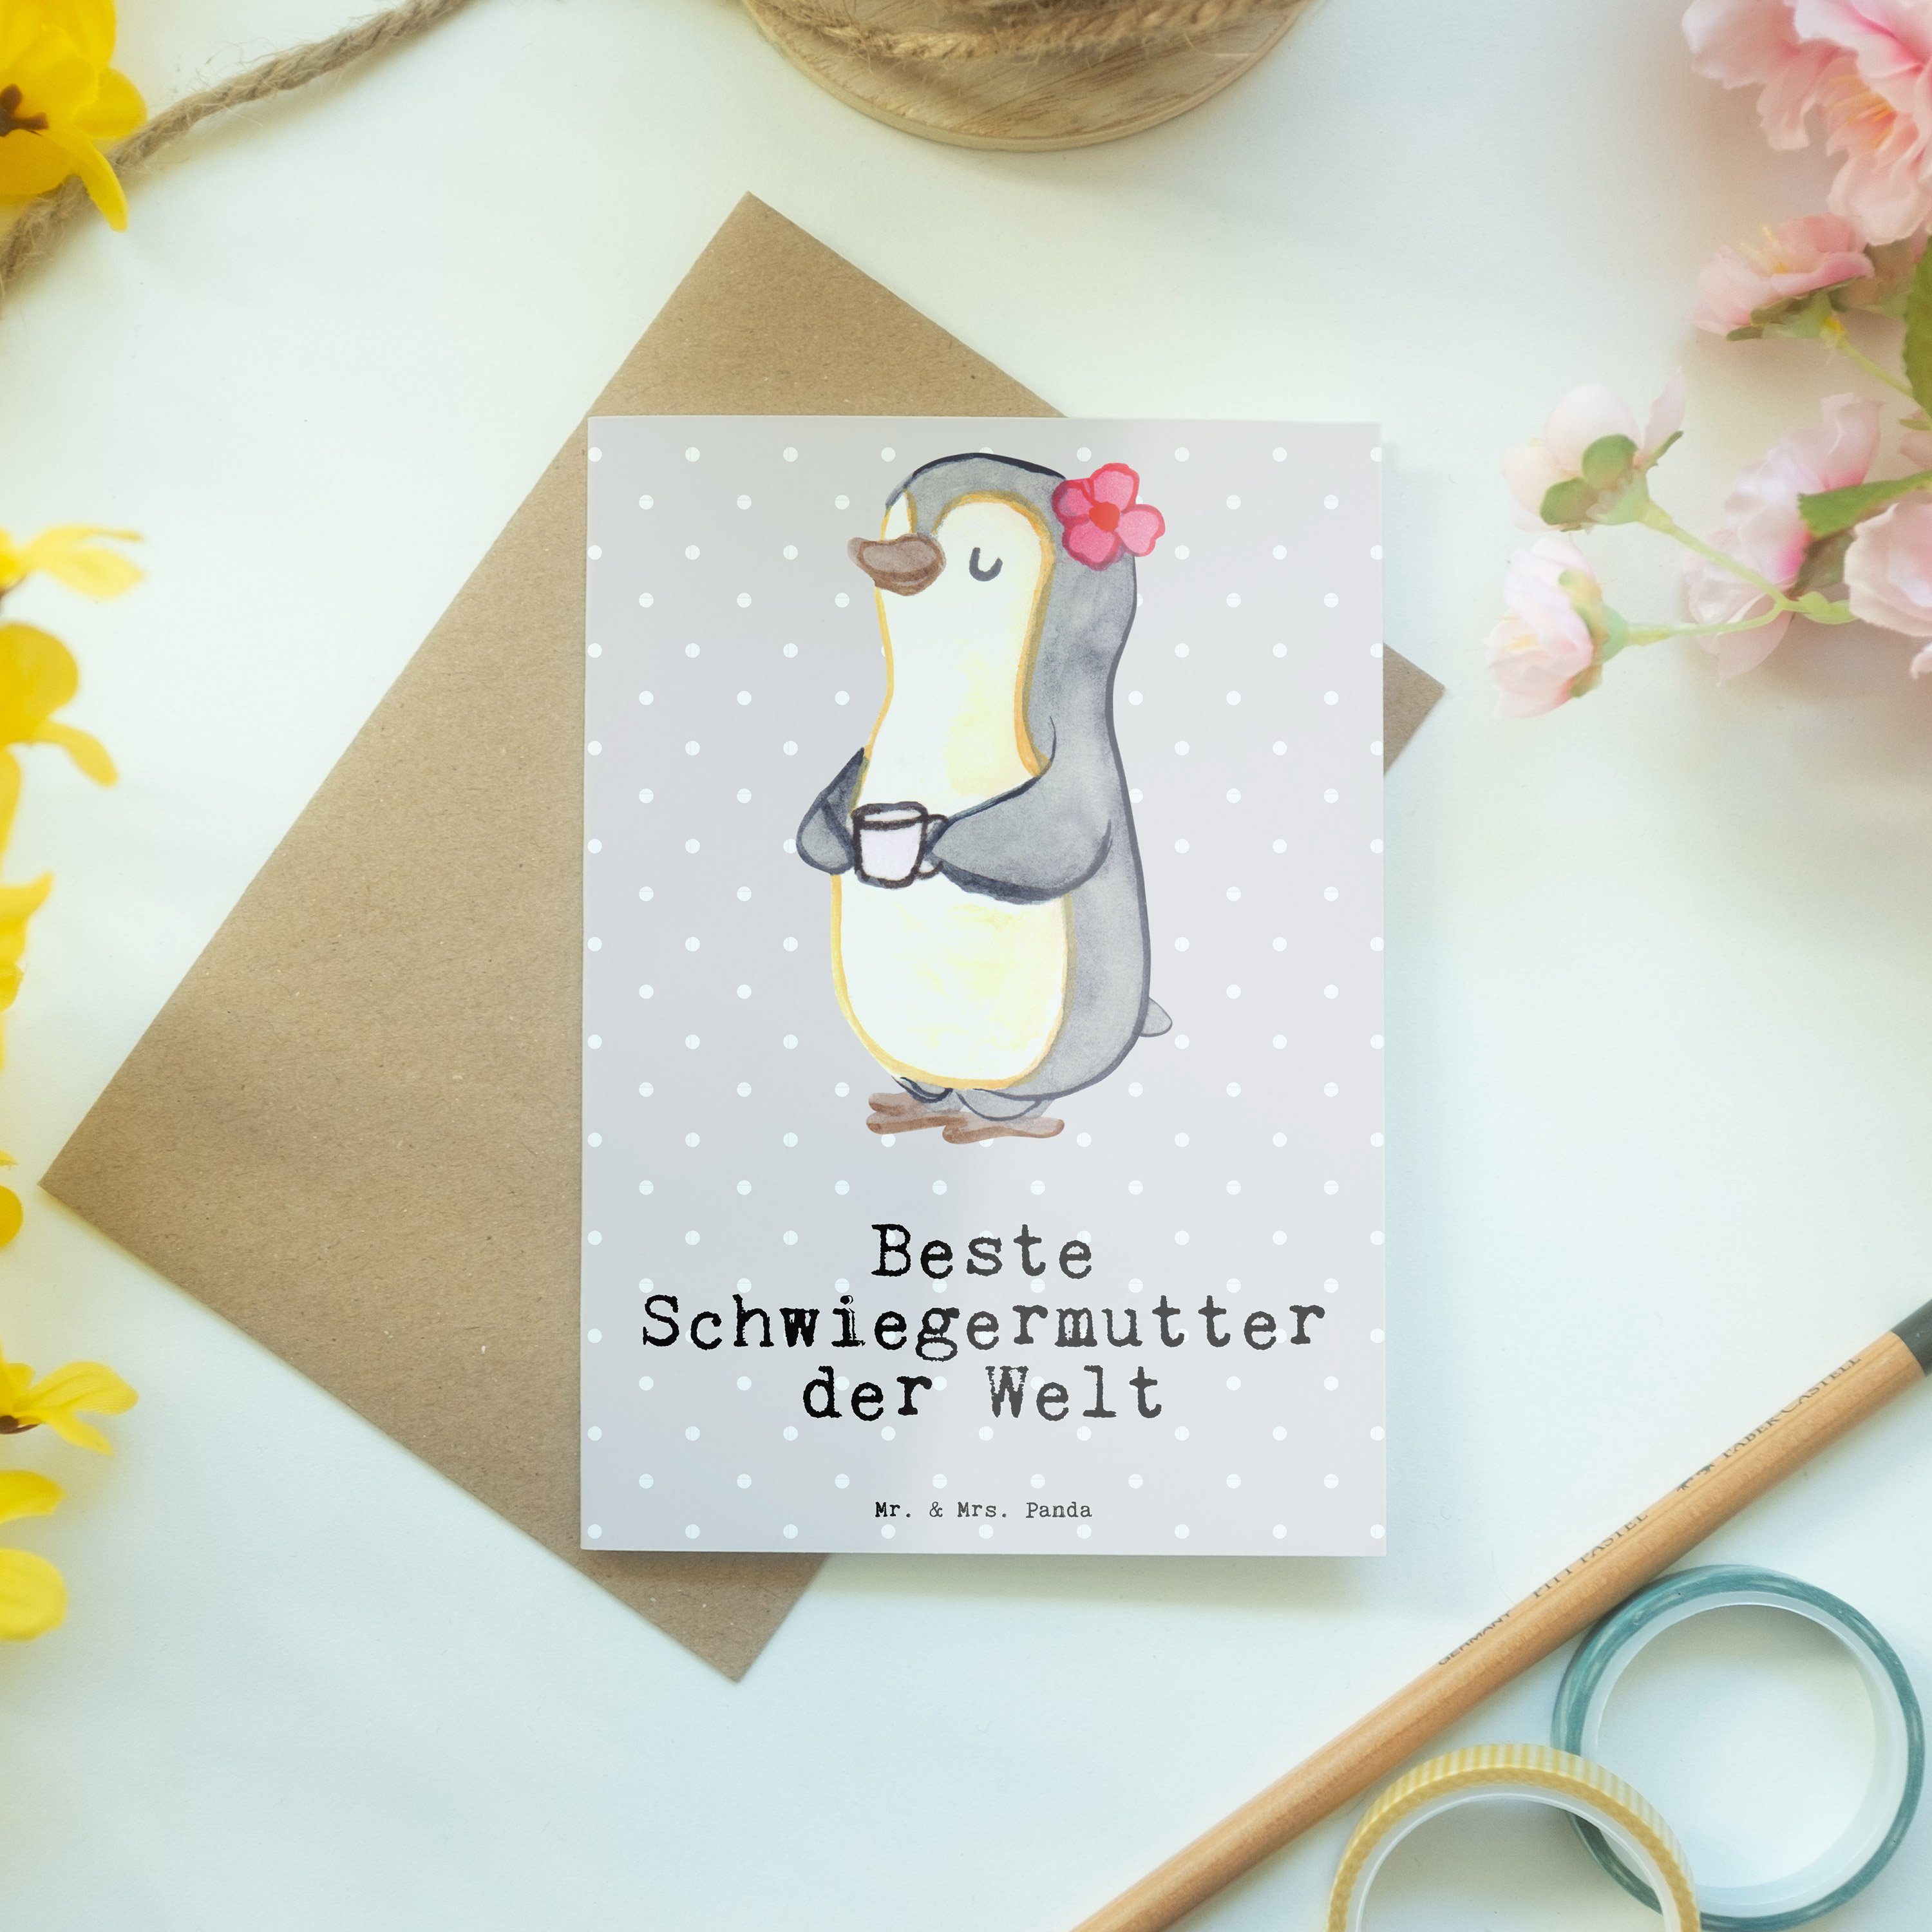 Panda Schwiegermutter Beste Mr. der Pinguin - Kla & Pastell Mrs. Geschenk, Grau Grußkarte - Welt